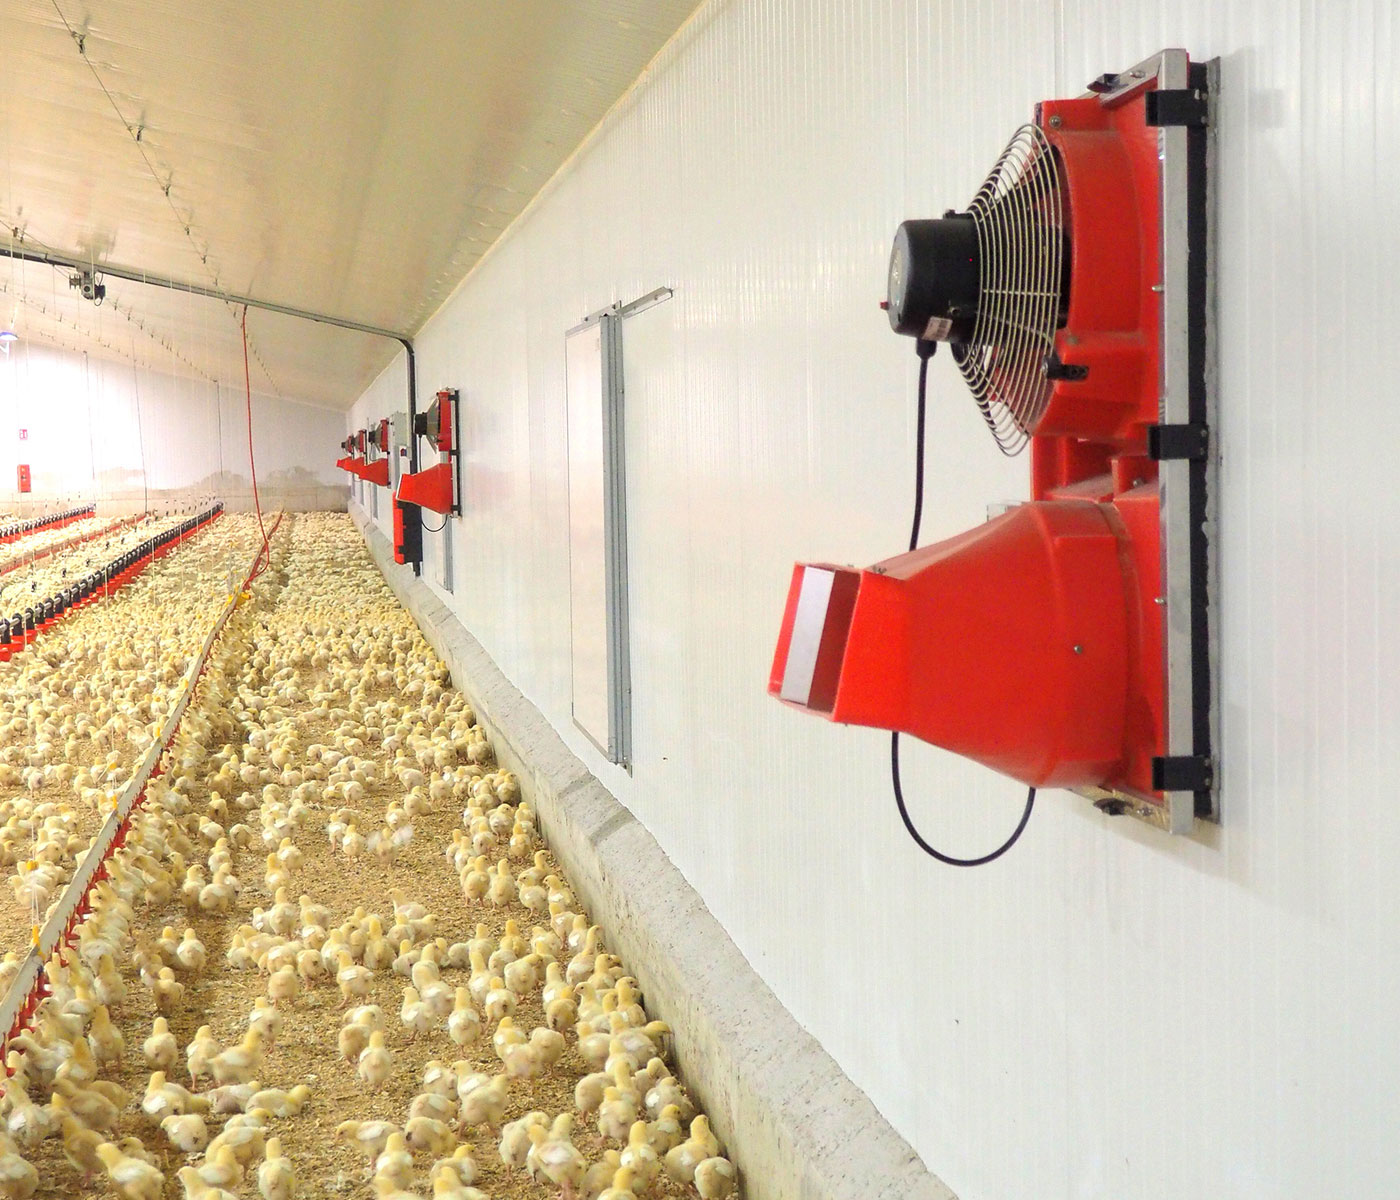 COPILOT System: “La solución completa para la gestión eficiente del ambiente de su granja, comprometidos con el bienestar animal y la eficiencia energética”